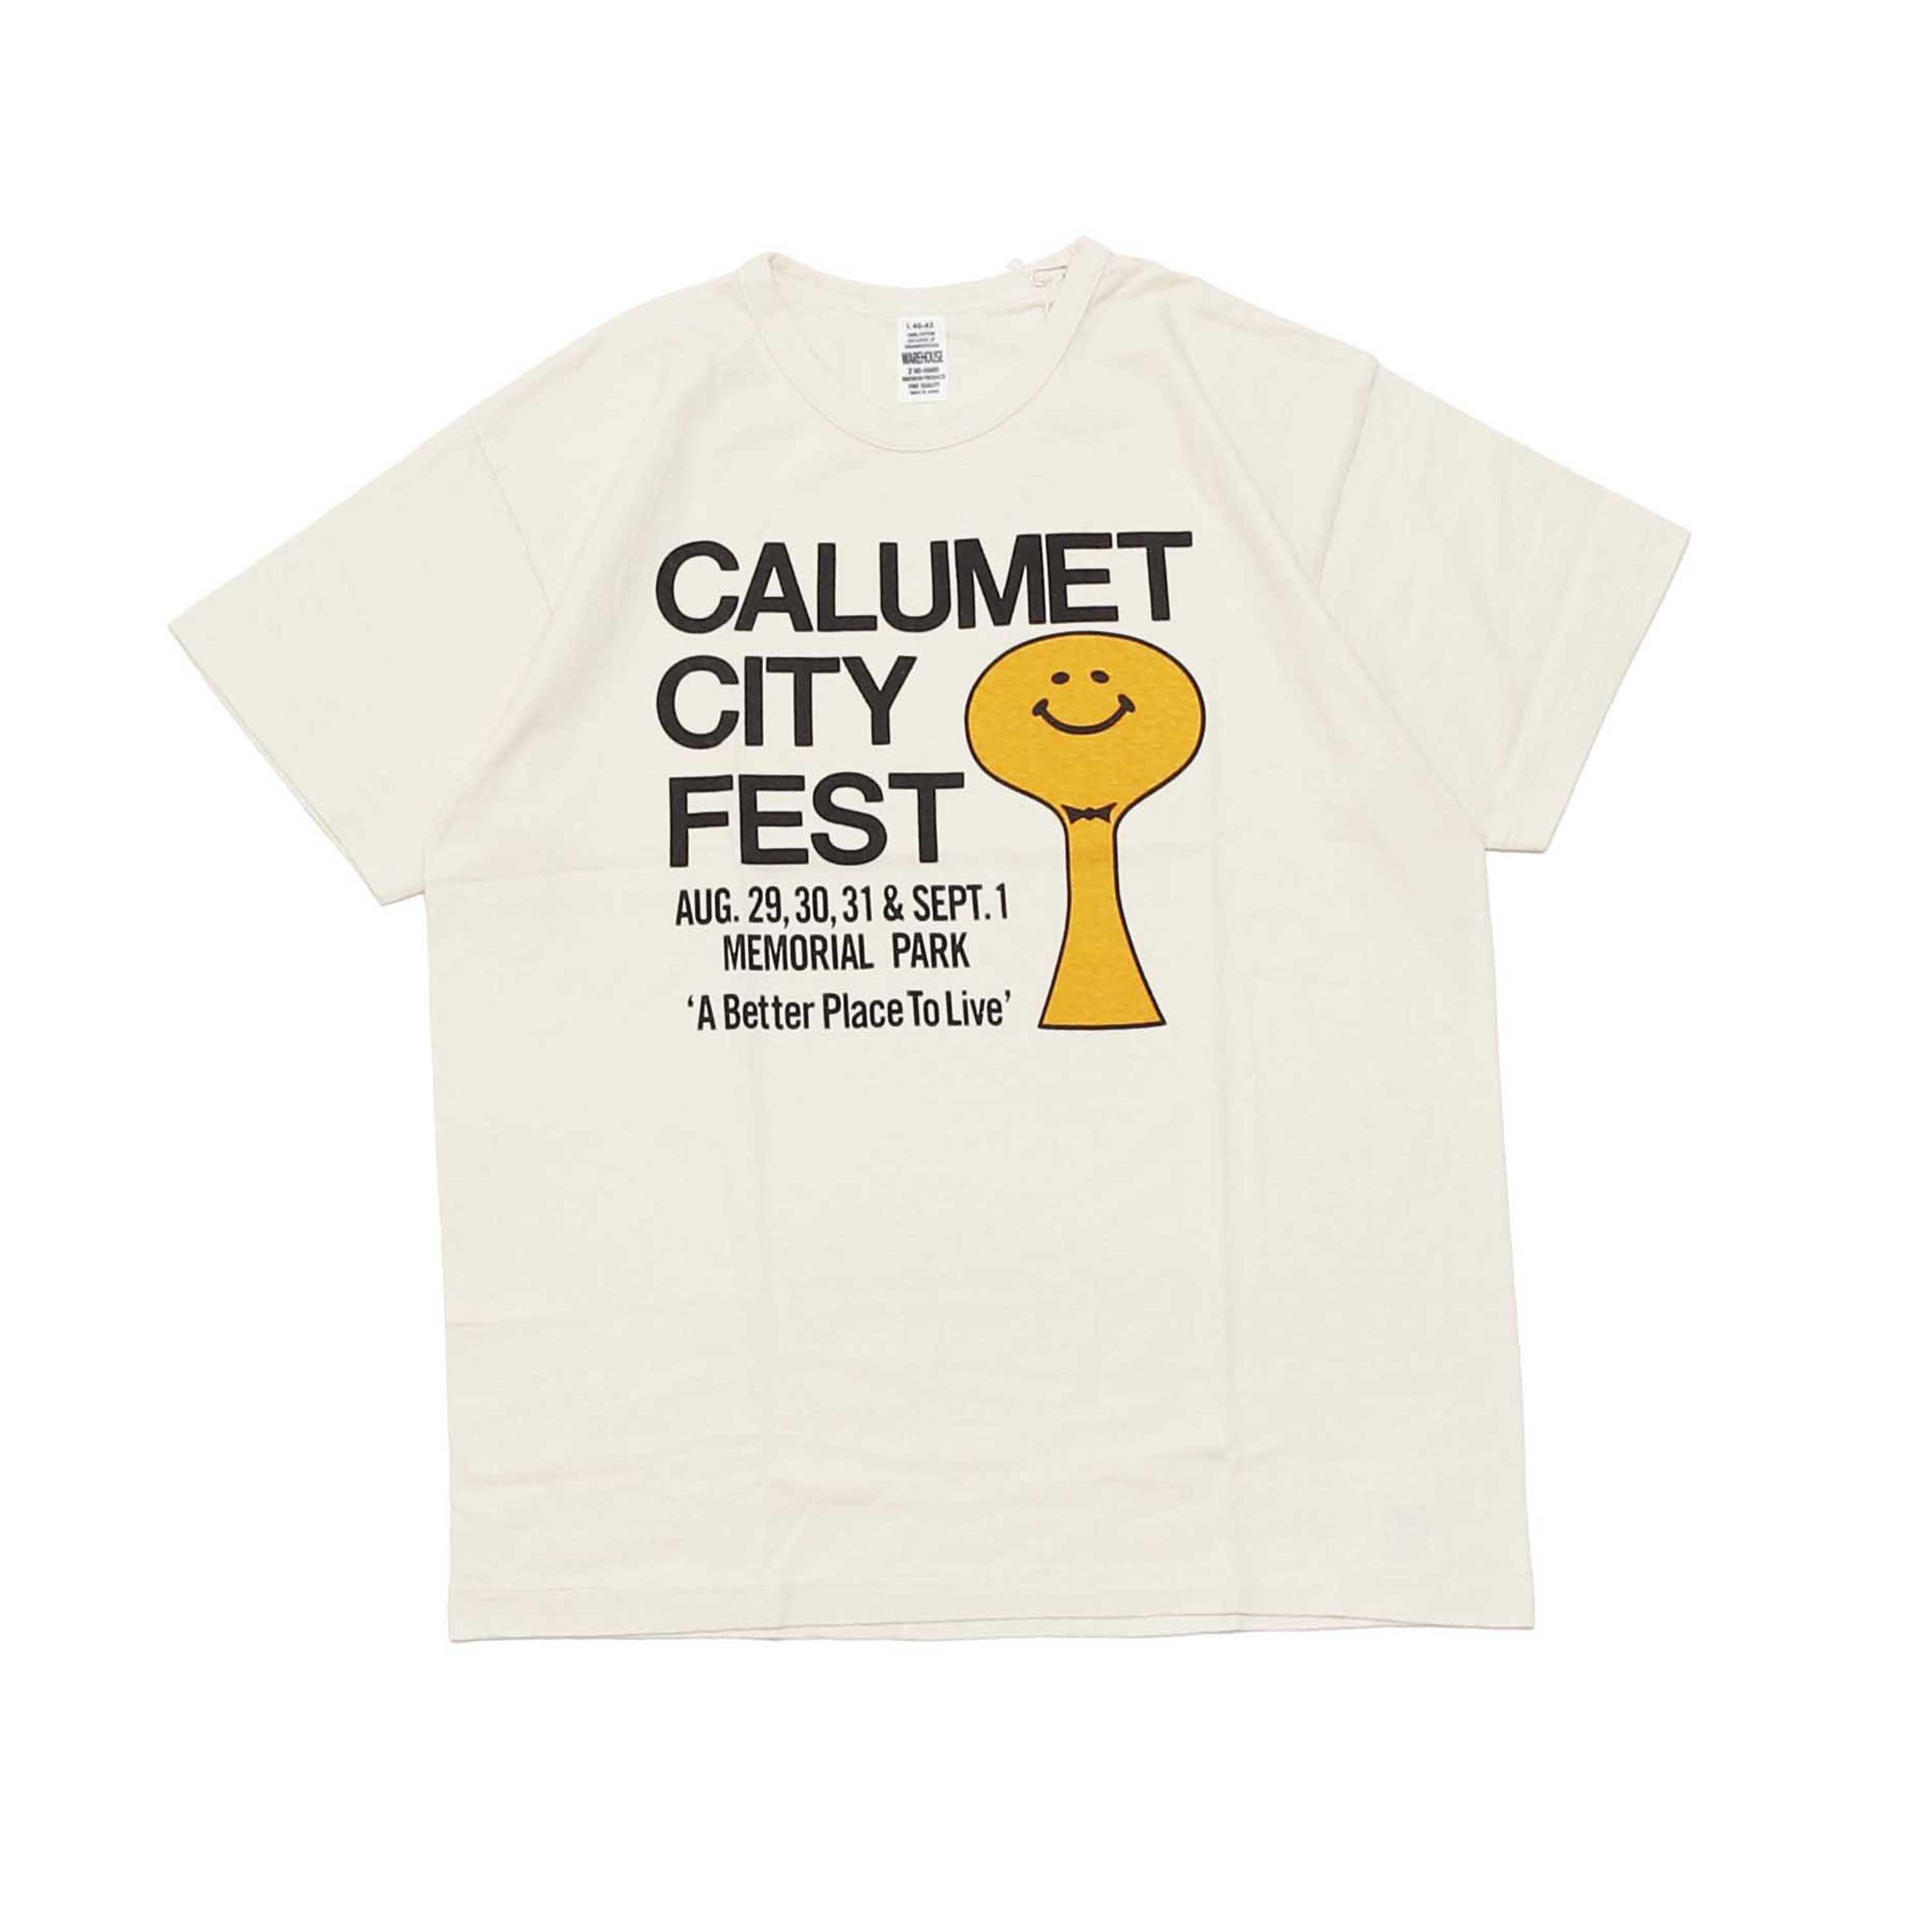 LOT 4064 CALUMET CITY FEST - CREAM